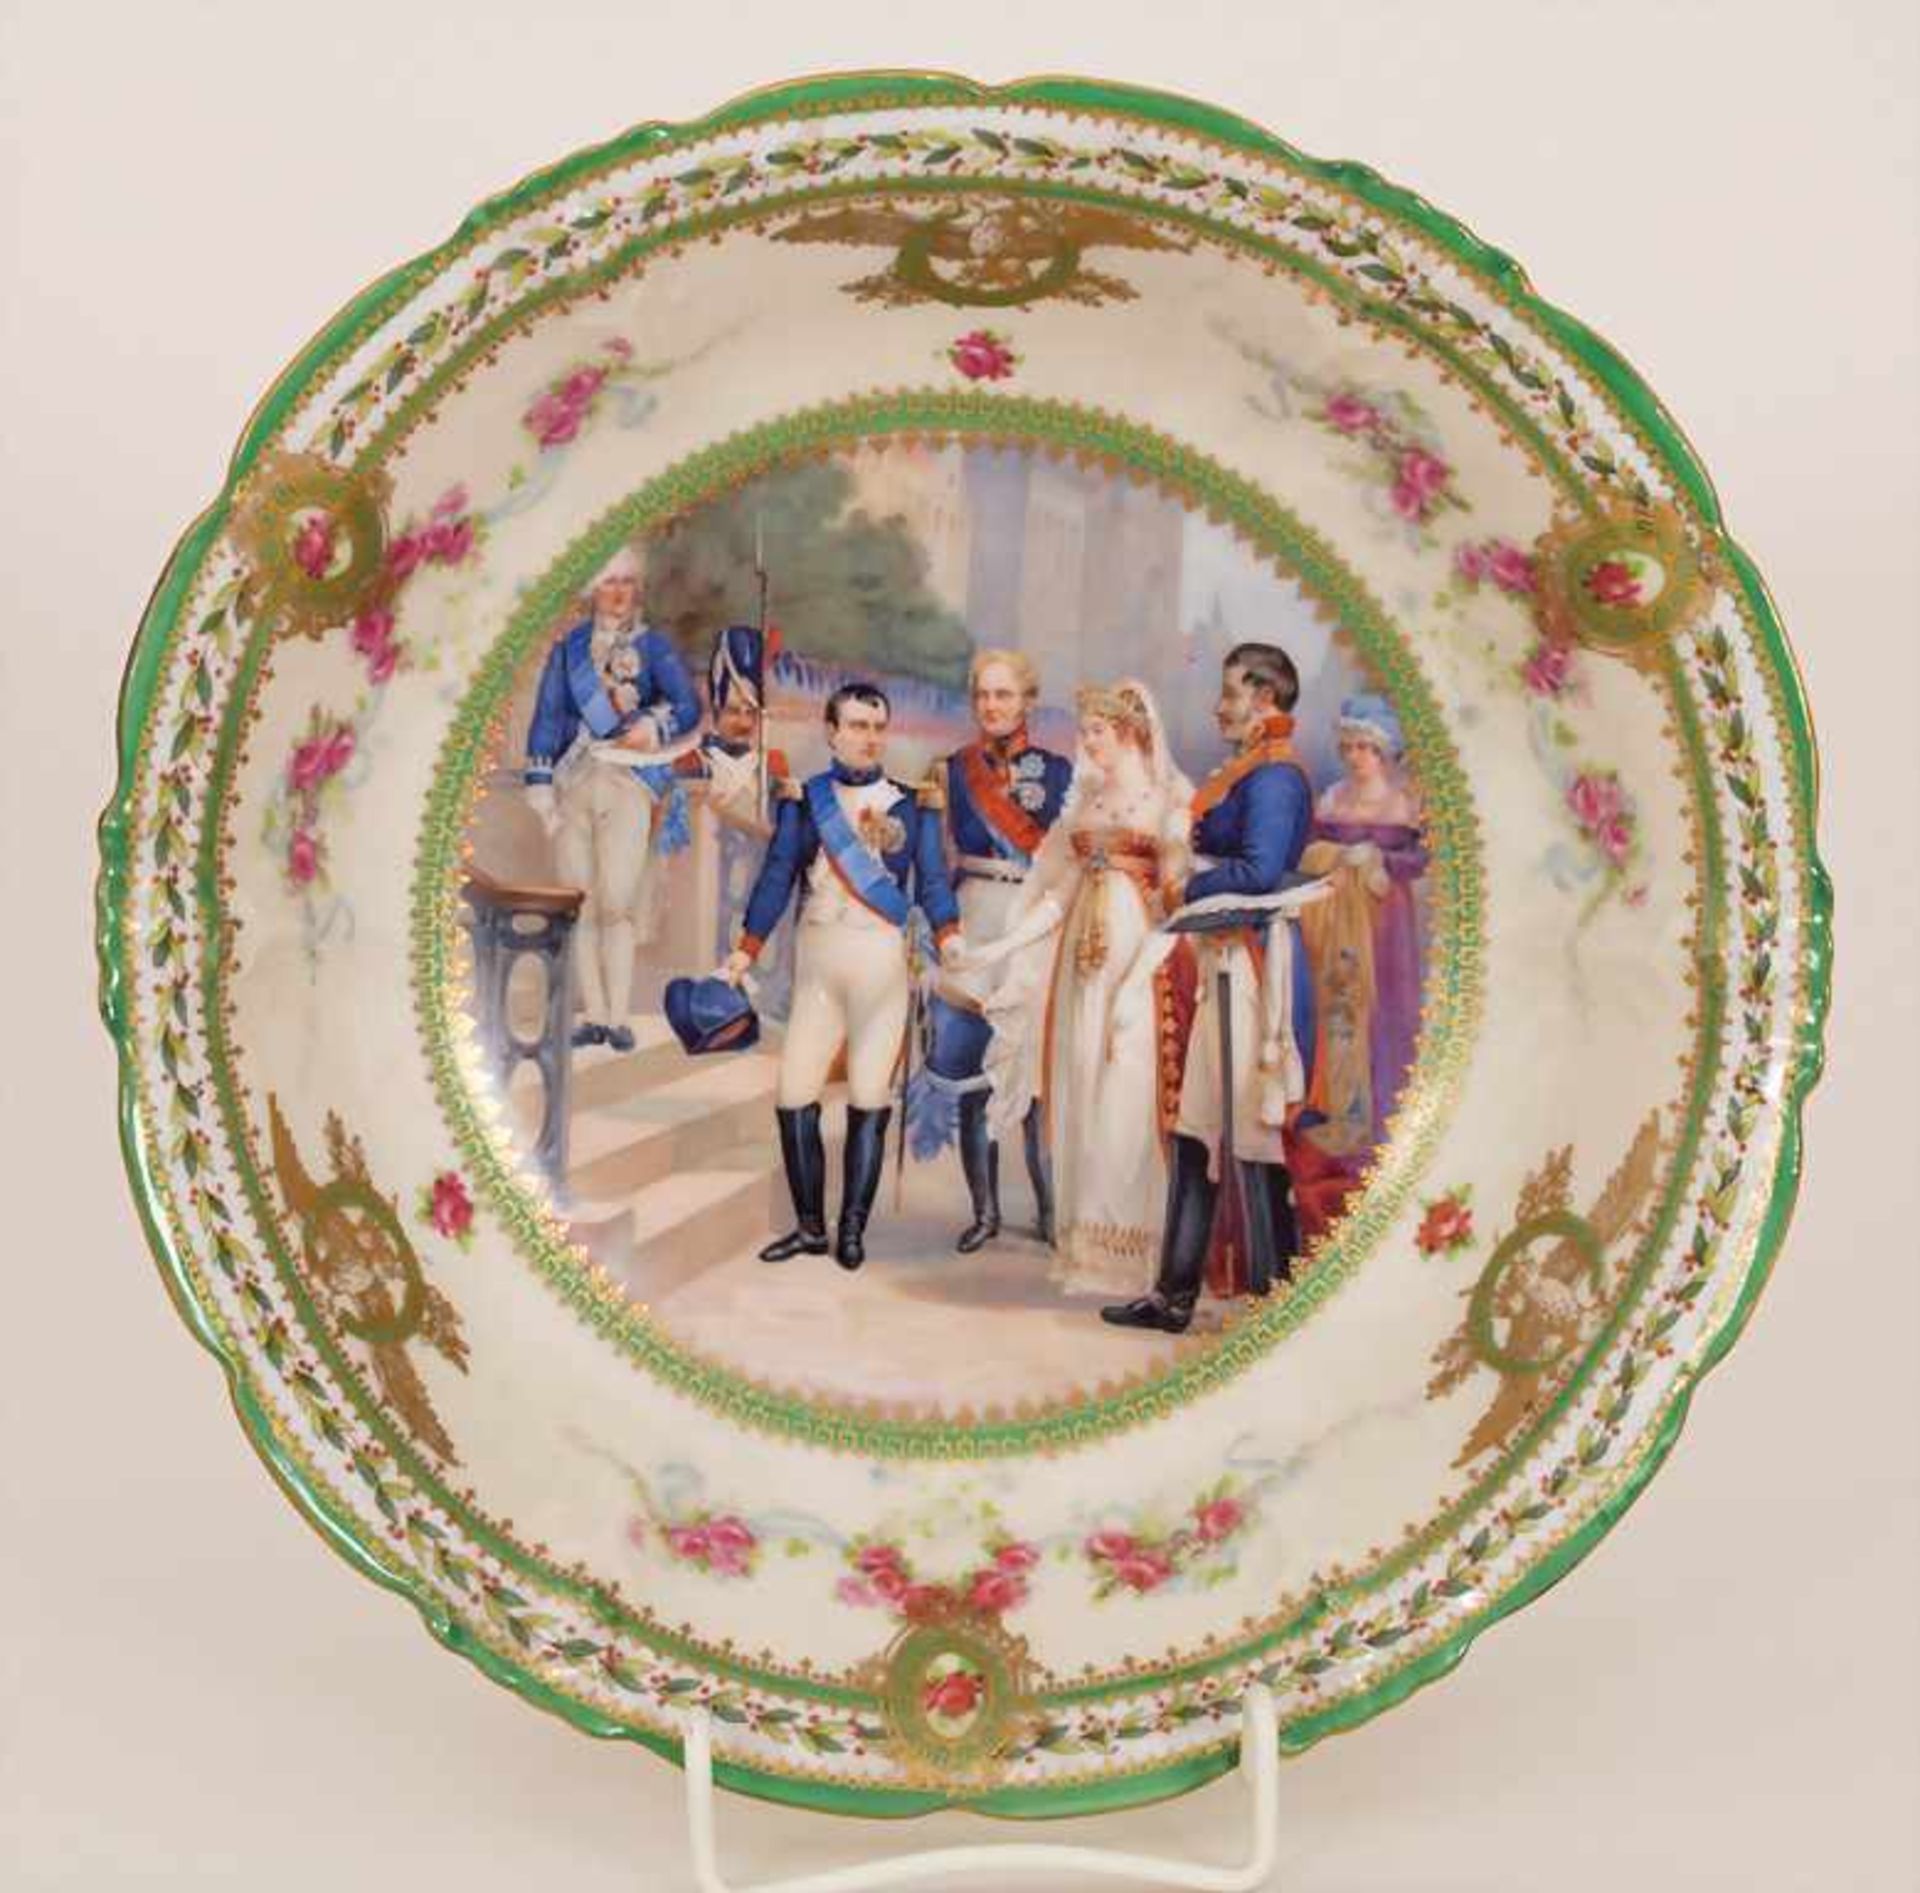 Prunkschale 'Napoléon 1er et la Reine de Prusse' / A splendid bowl depicting Napoleon I. and the